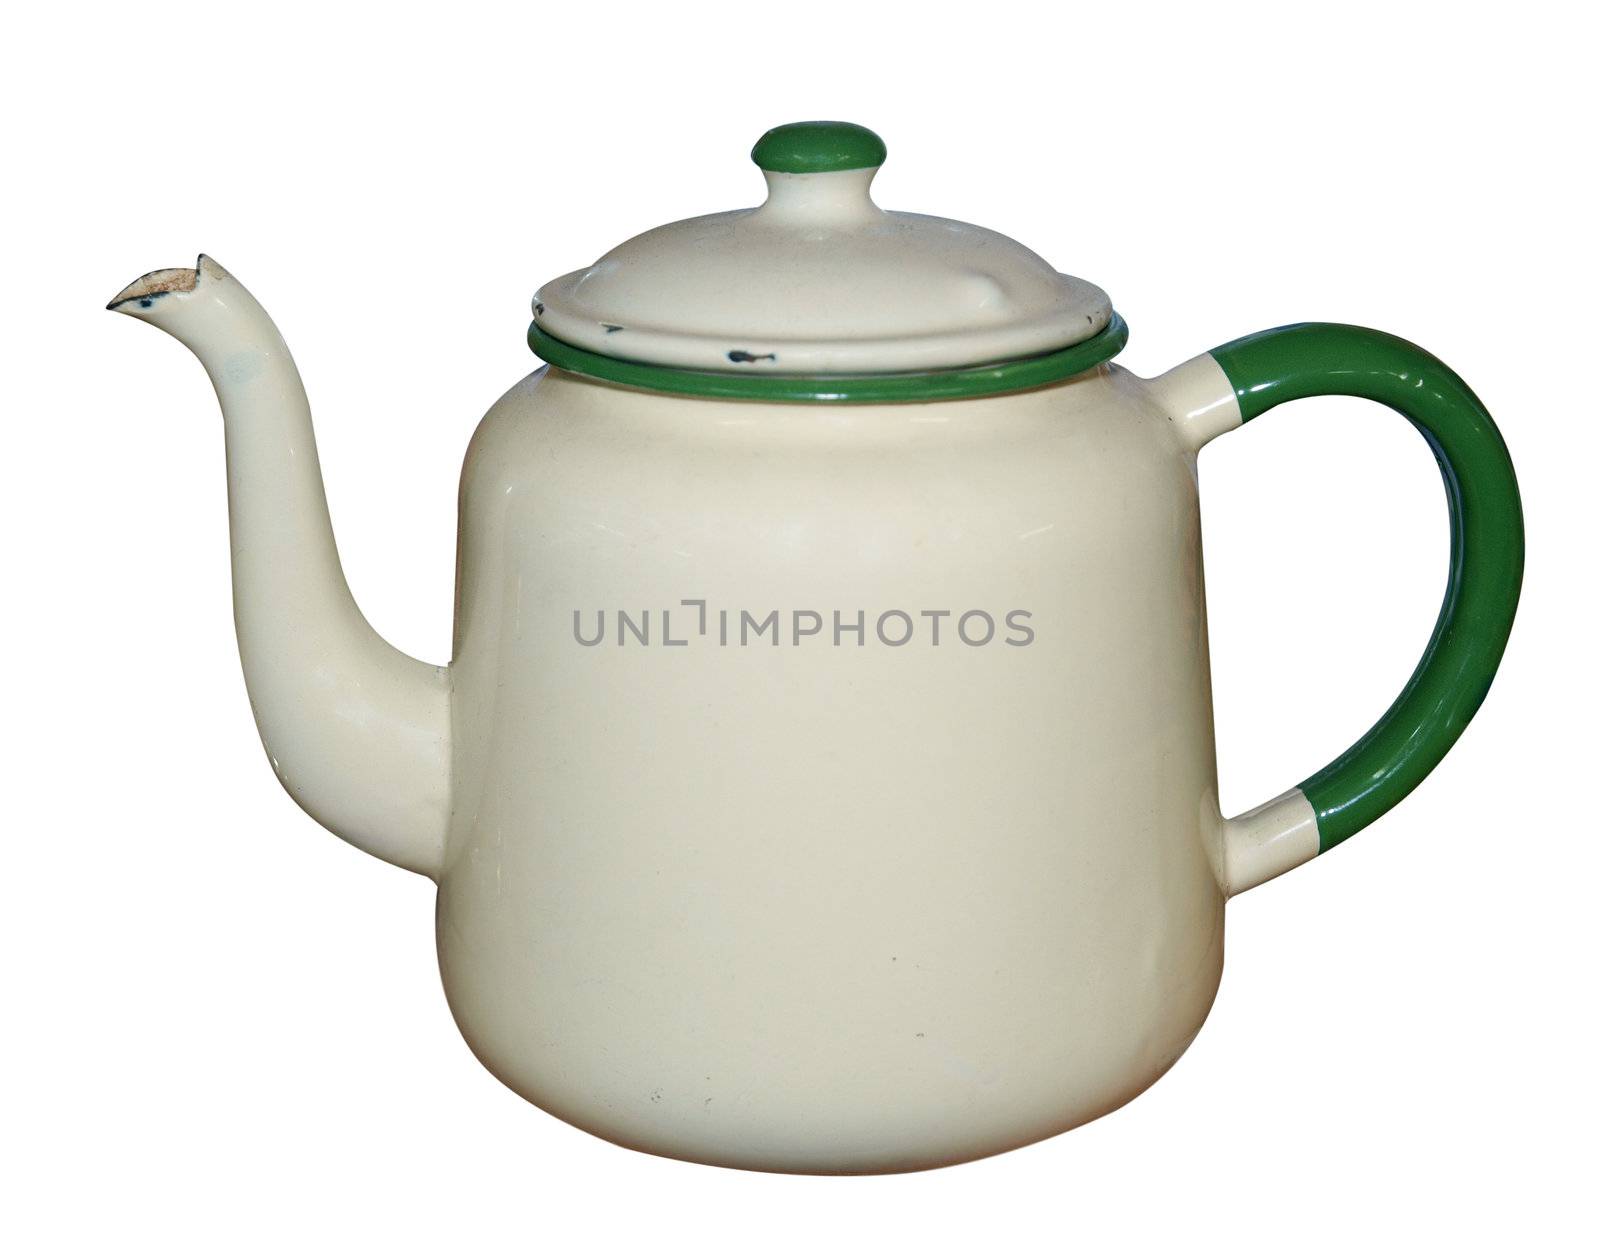 Old Enamel Teapot by MargoJH